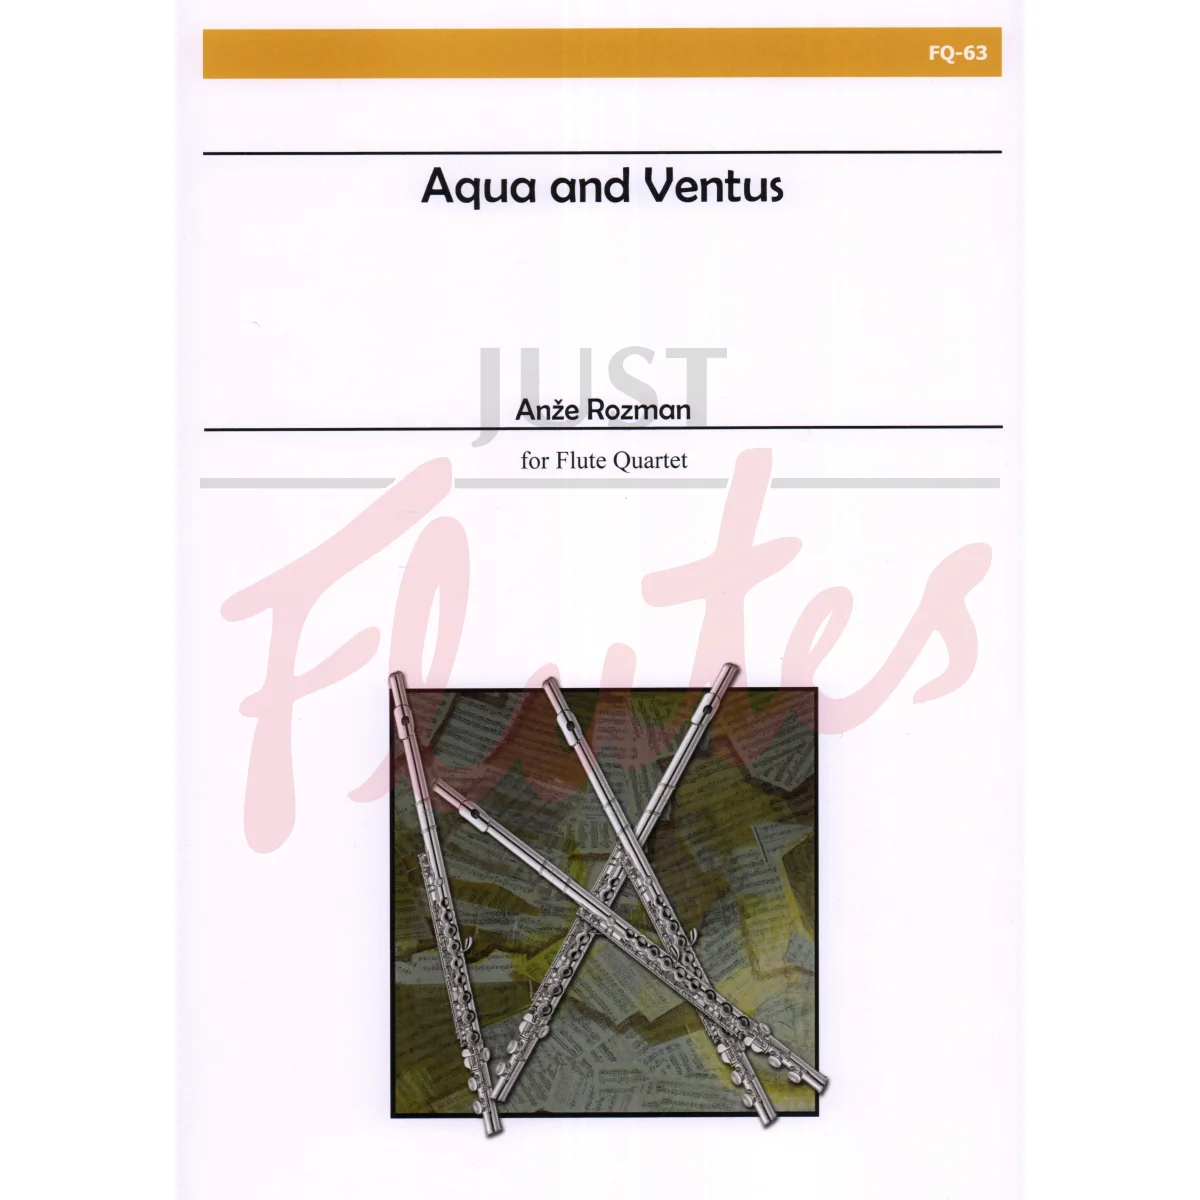 Aqua and Ventus for Flute Quartet